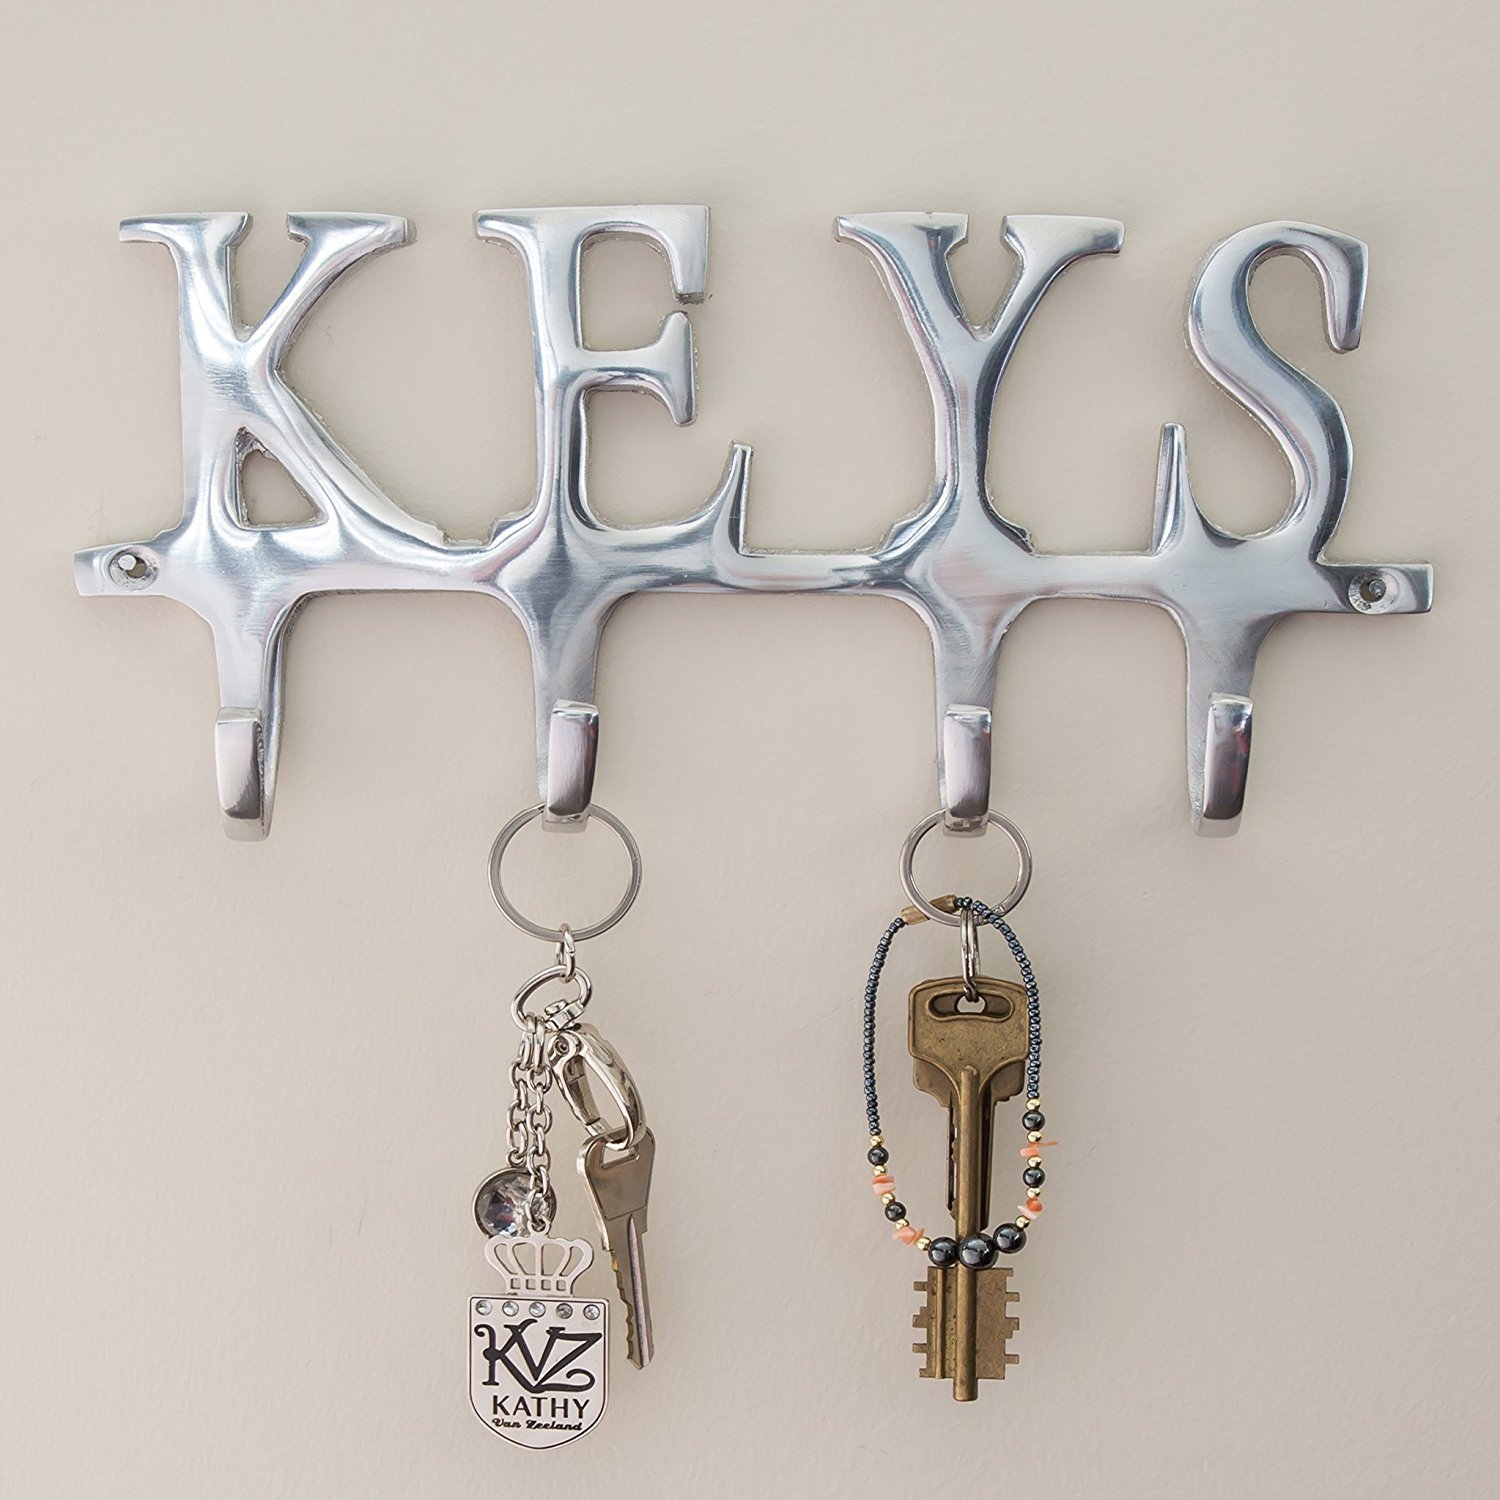 Уникальные держатели для ключей своими руками — просто, быстро и на удивление гостей